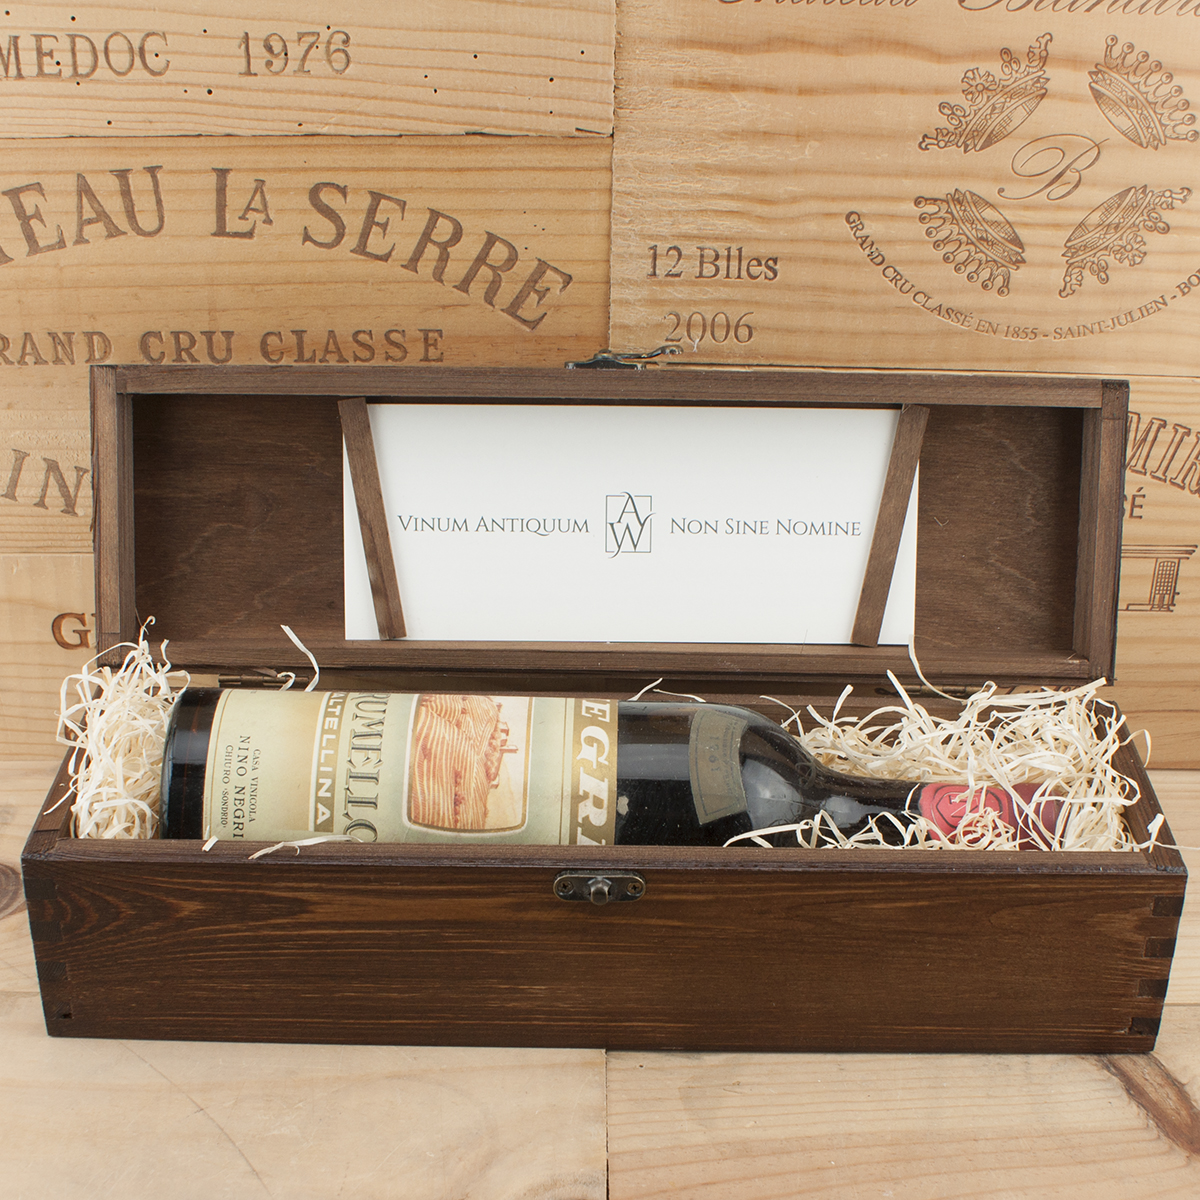 1961 Grumello Nino Negri in the Antik Wein Box